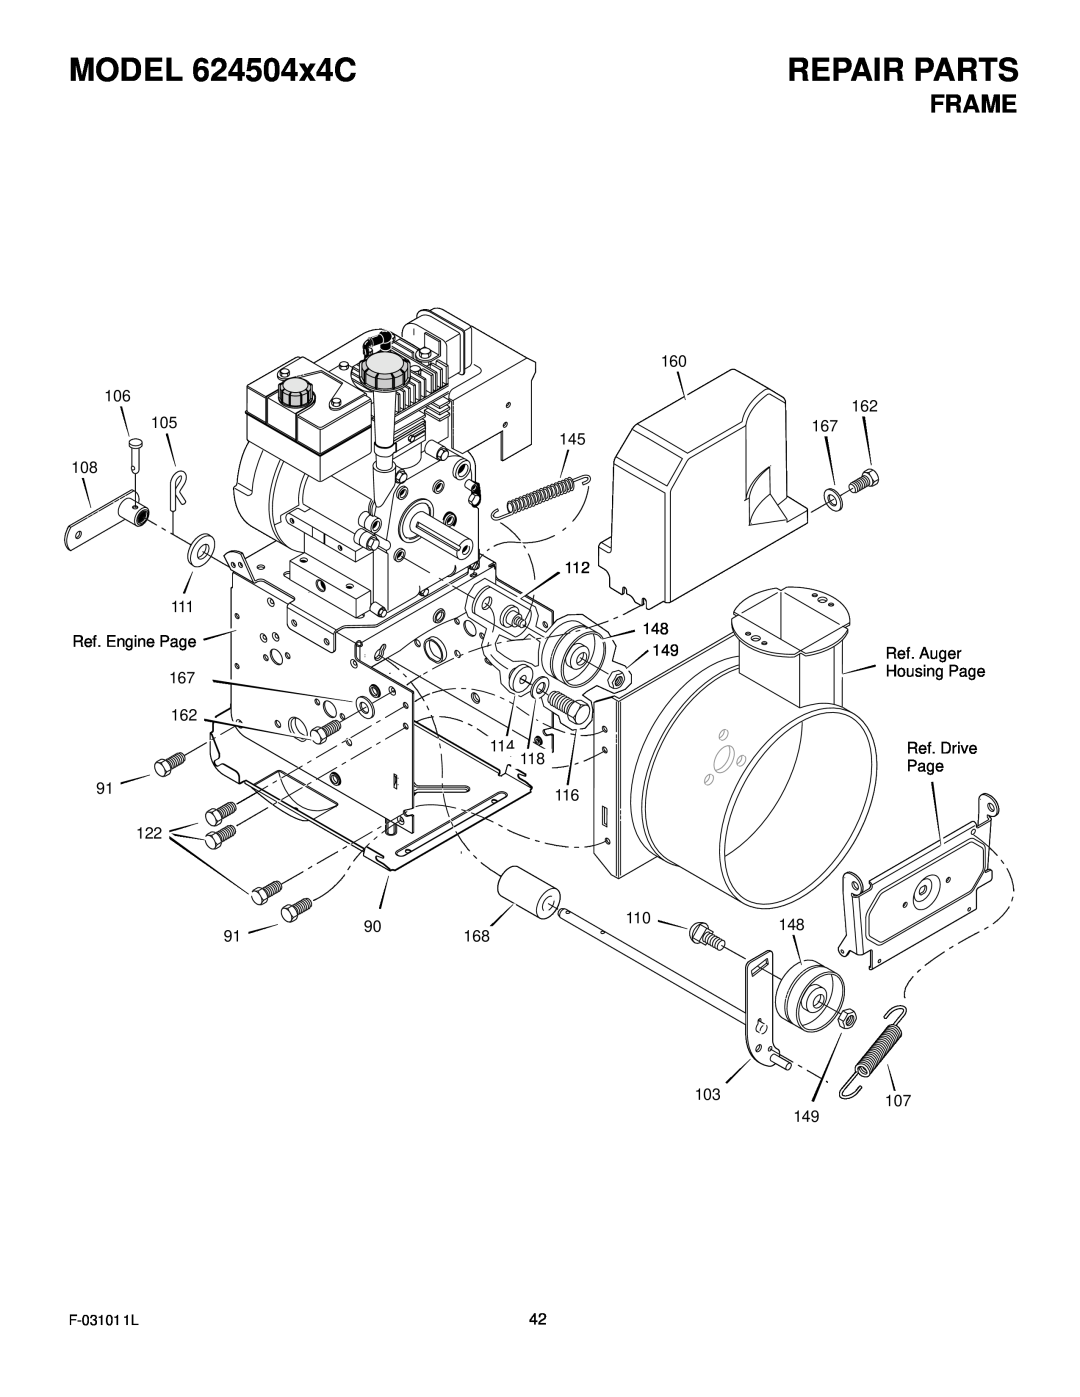 Murray manual Frame, MODEL 624504x4C, Repair Parts 